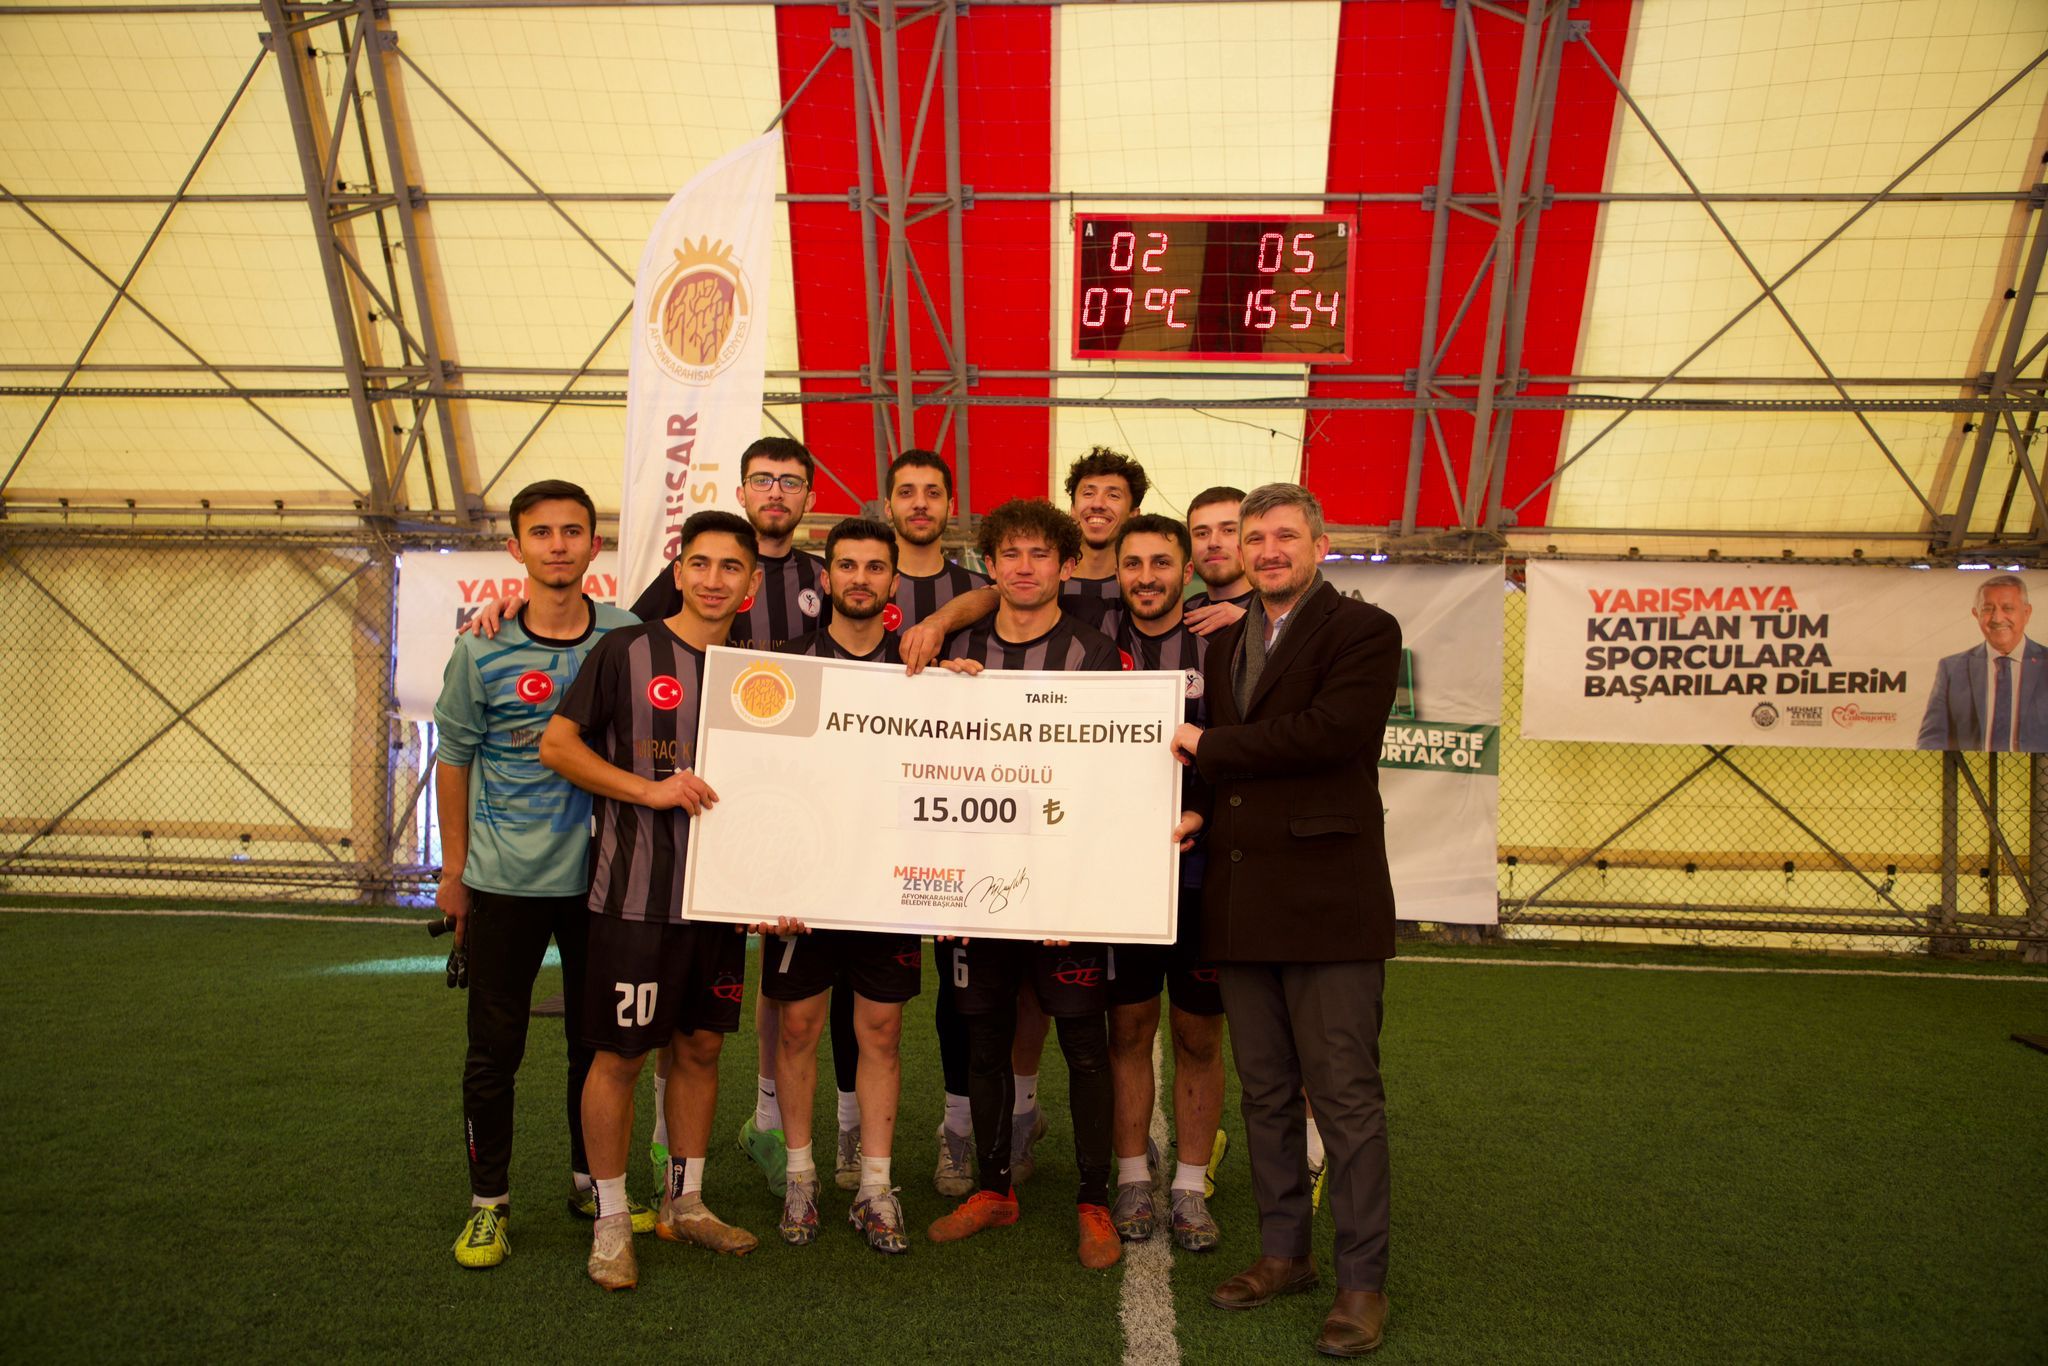 Afyonkarahisar Belediyesi ve AKÜ iş birliğinde ödüllü futbol turnuvası!